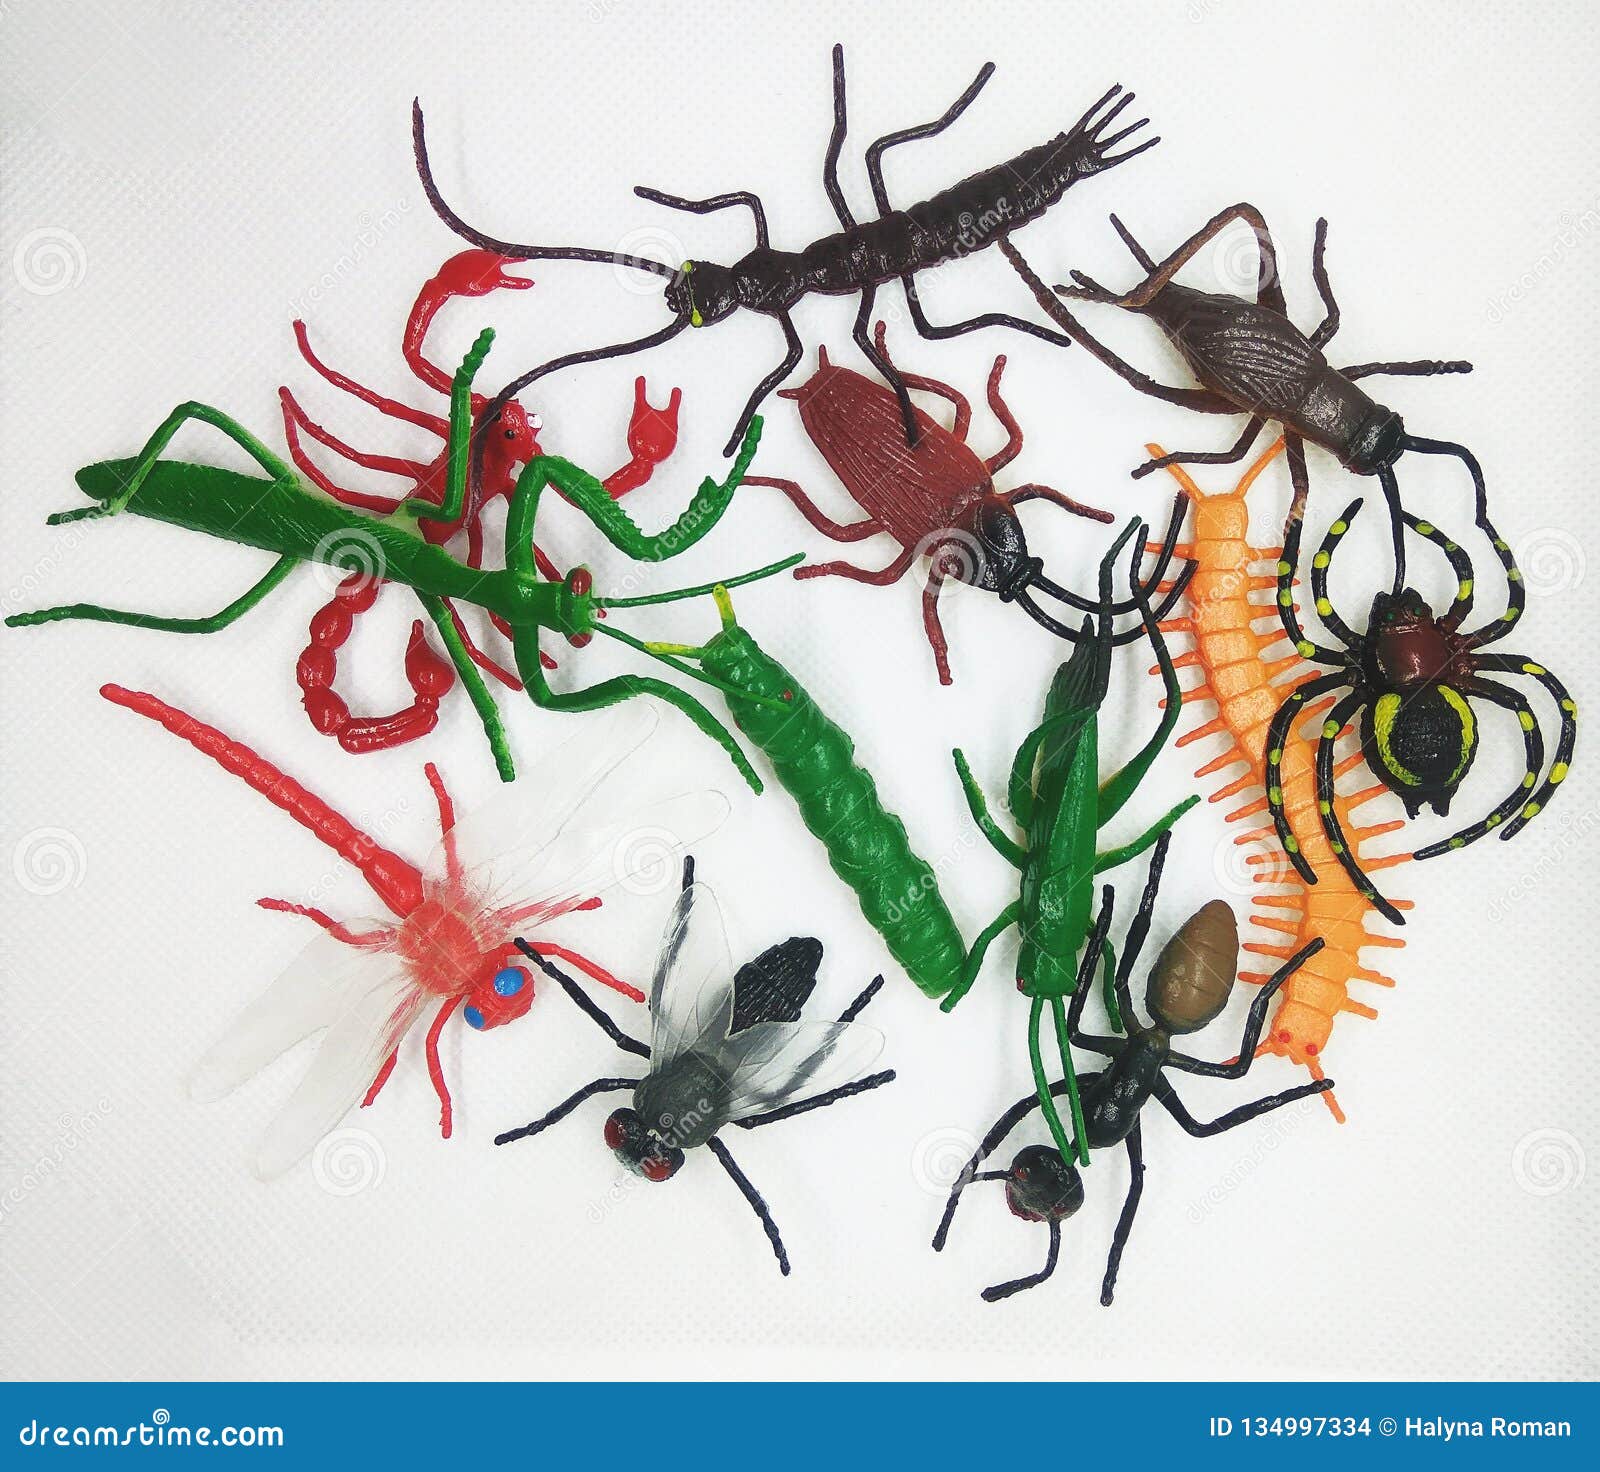 Juguetes de Insectos Animales para niños educación/Juguetes de Halloween OOTSR 14 Piezas Figuras de Insectos Insectos Juguetes Realistas Insectos de Plástico 